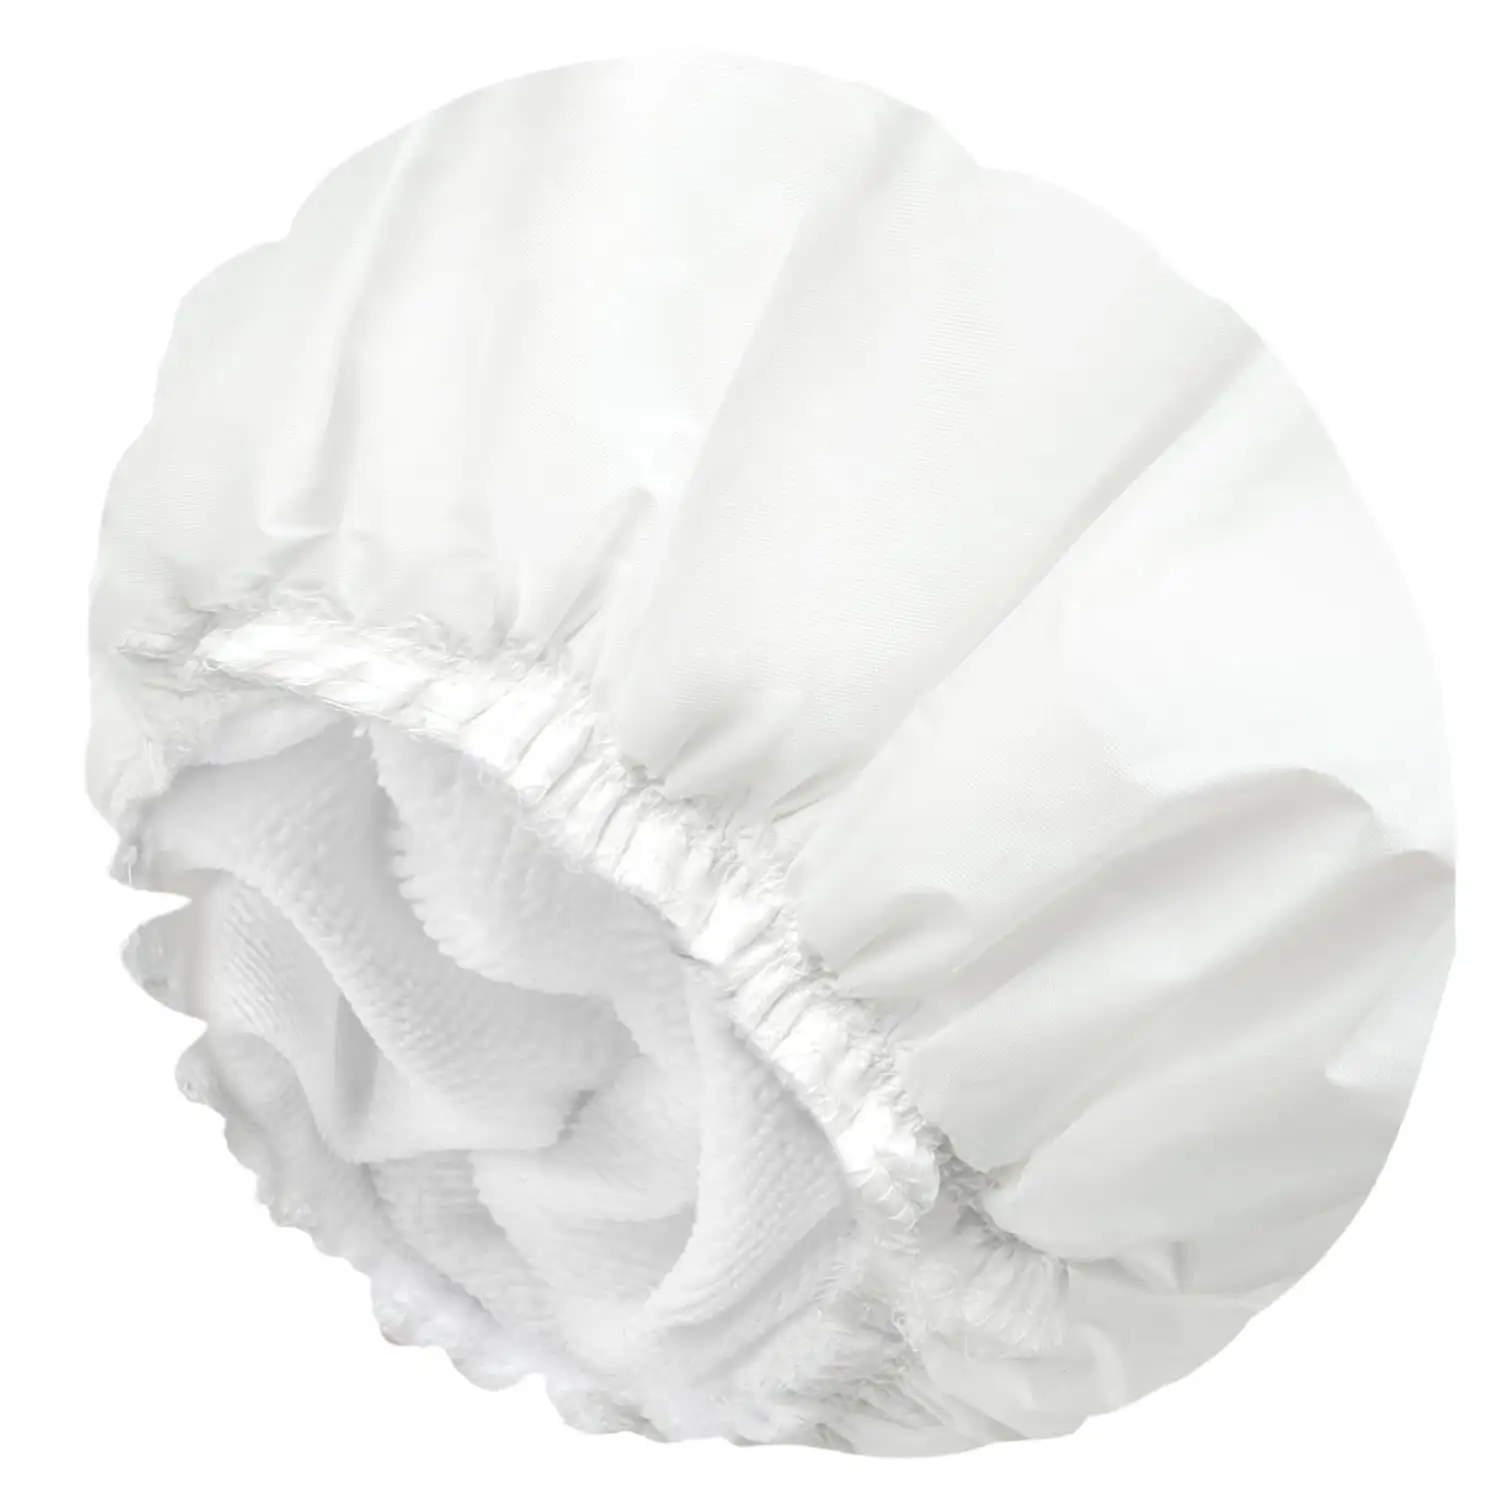 قبعات الاستحمام المرنة القابلة لإعادة الاستخدام من قماش تيري مزودة بأغطية EVA للخارج، قبعات استحمام للنساء بطبقتين مضادة للماء